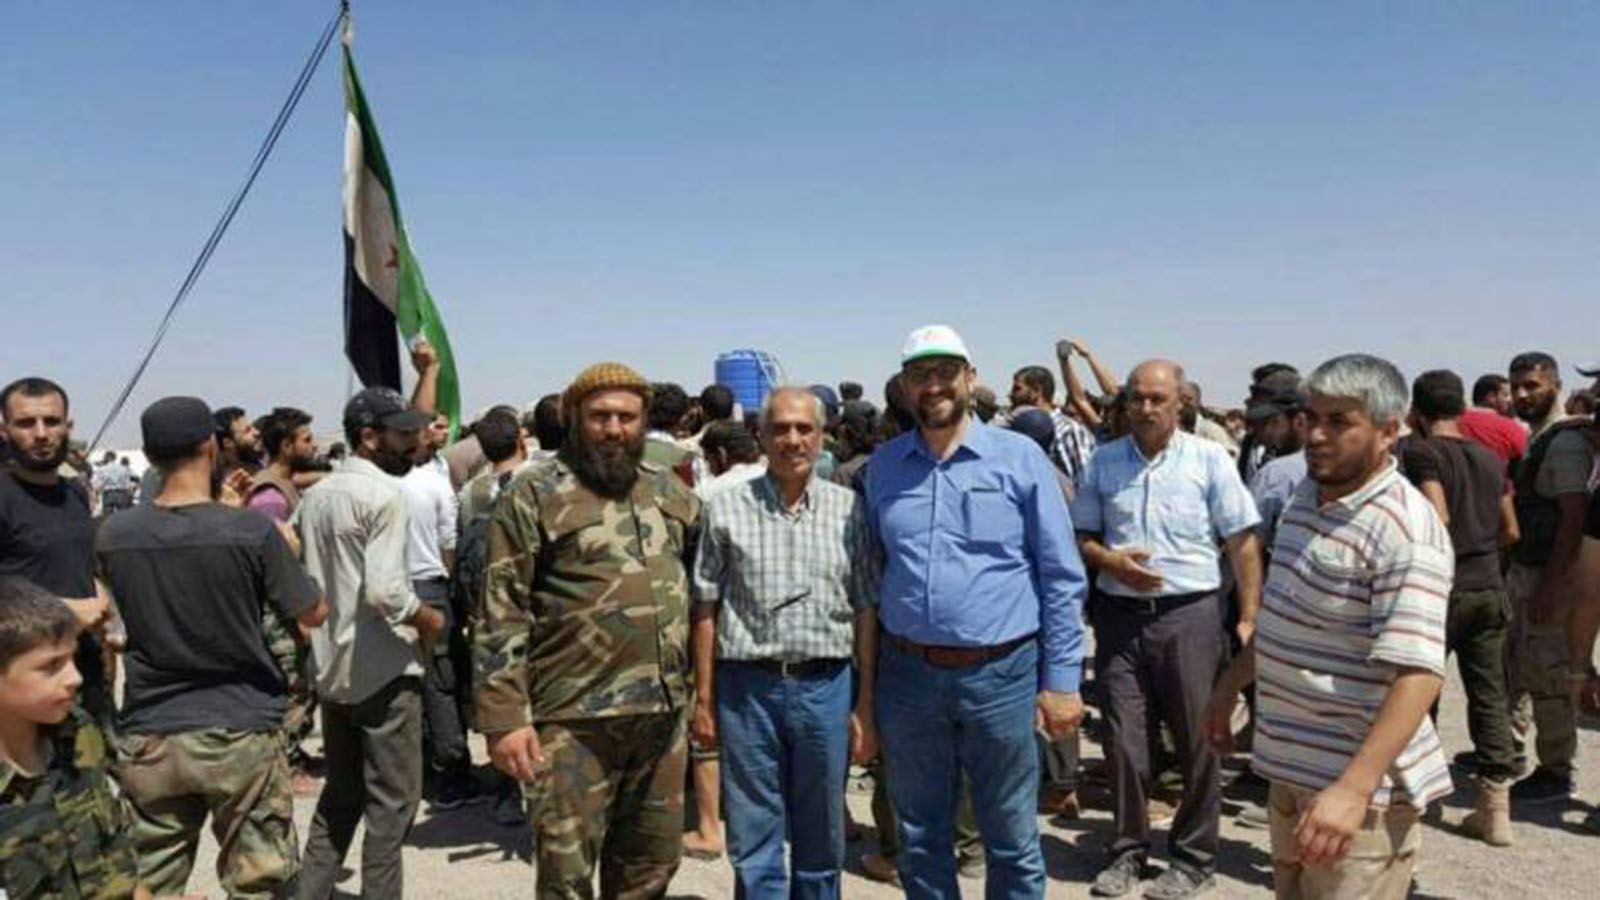 مبادرة "جيش الثورة":فرصة أخيرة..تثير غضب تحرير الشام